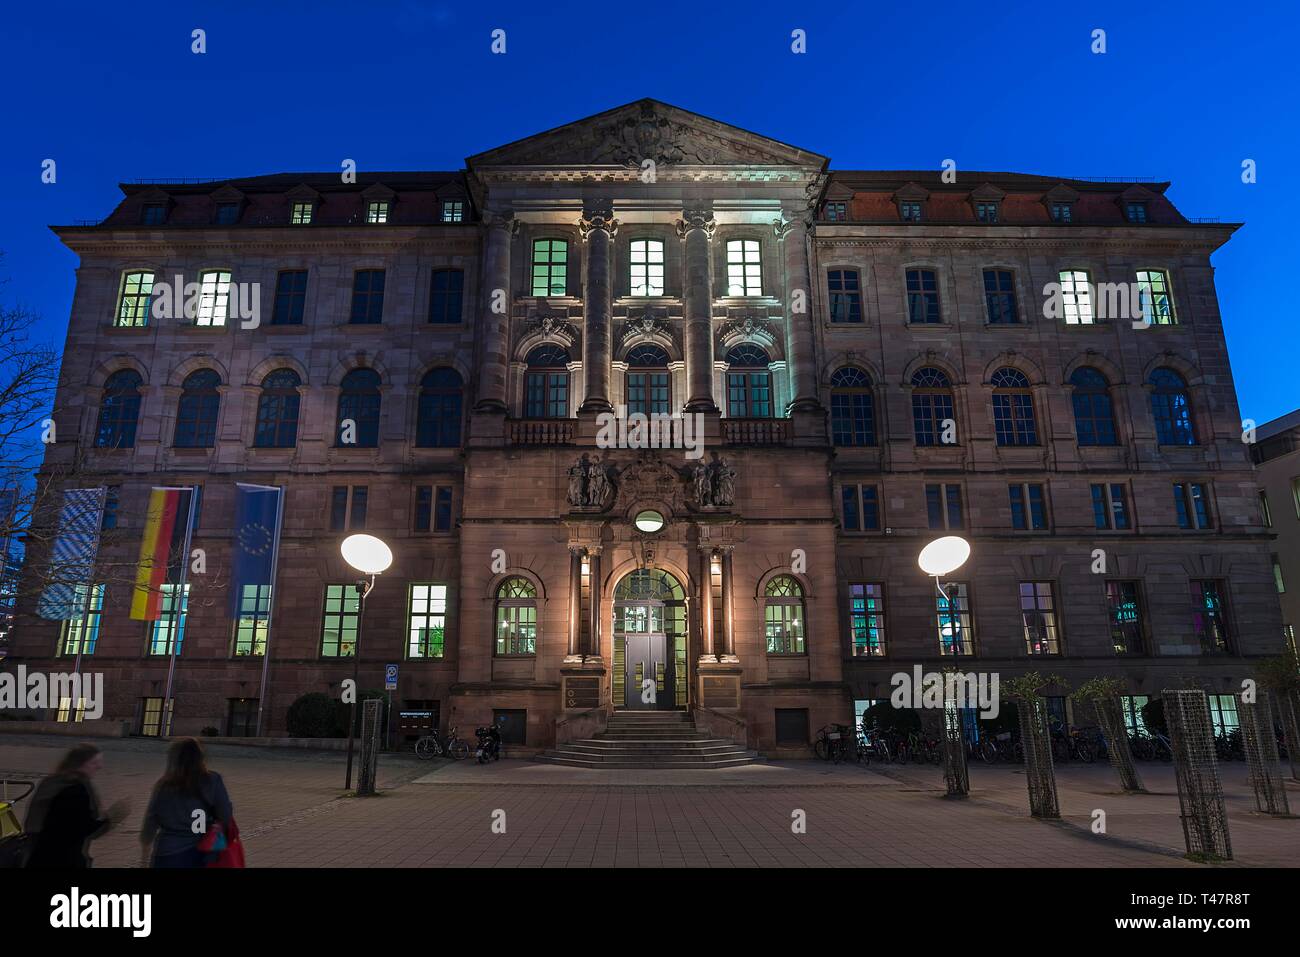 Educational center at dusk, Nuremberg, Middle Franconia, Bavaria, Germany Stock Photo